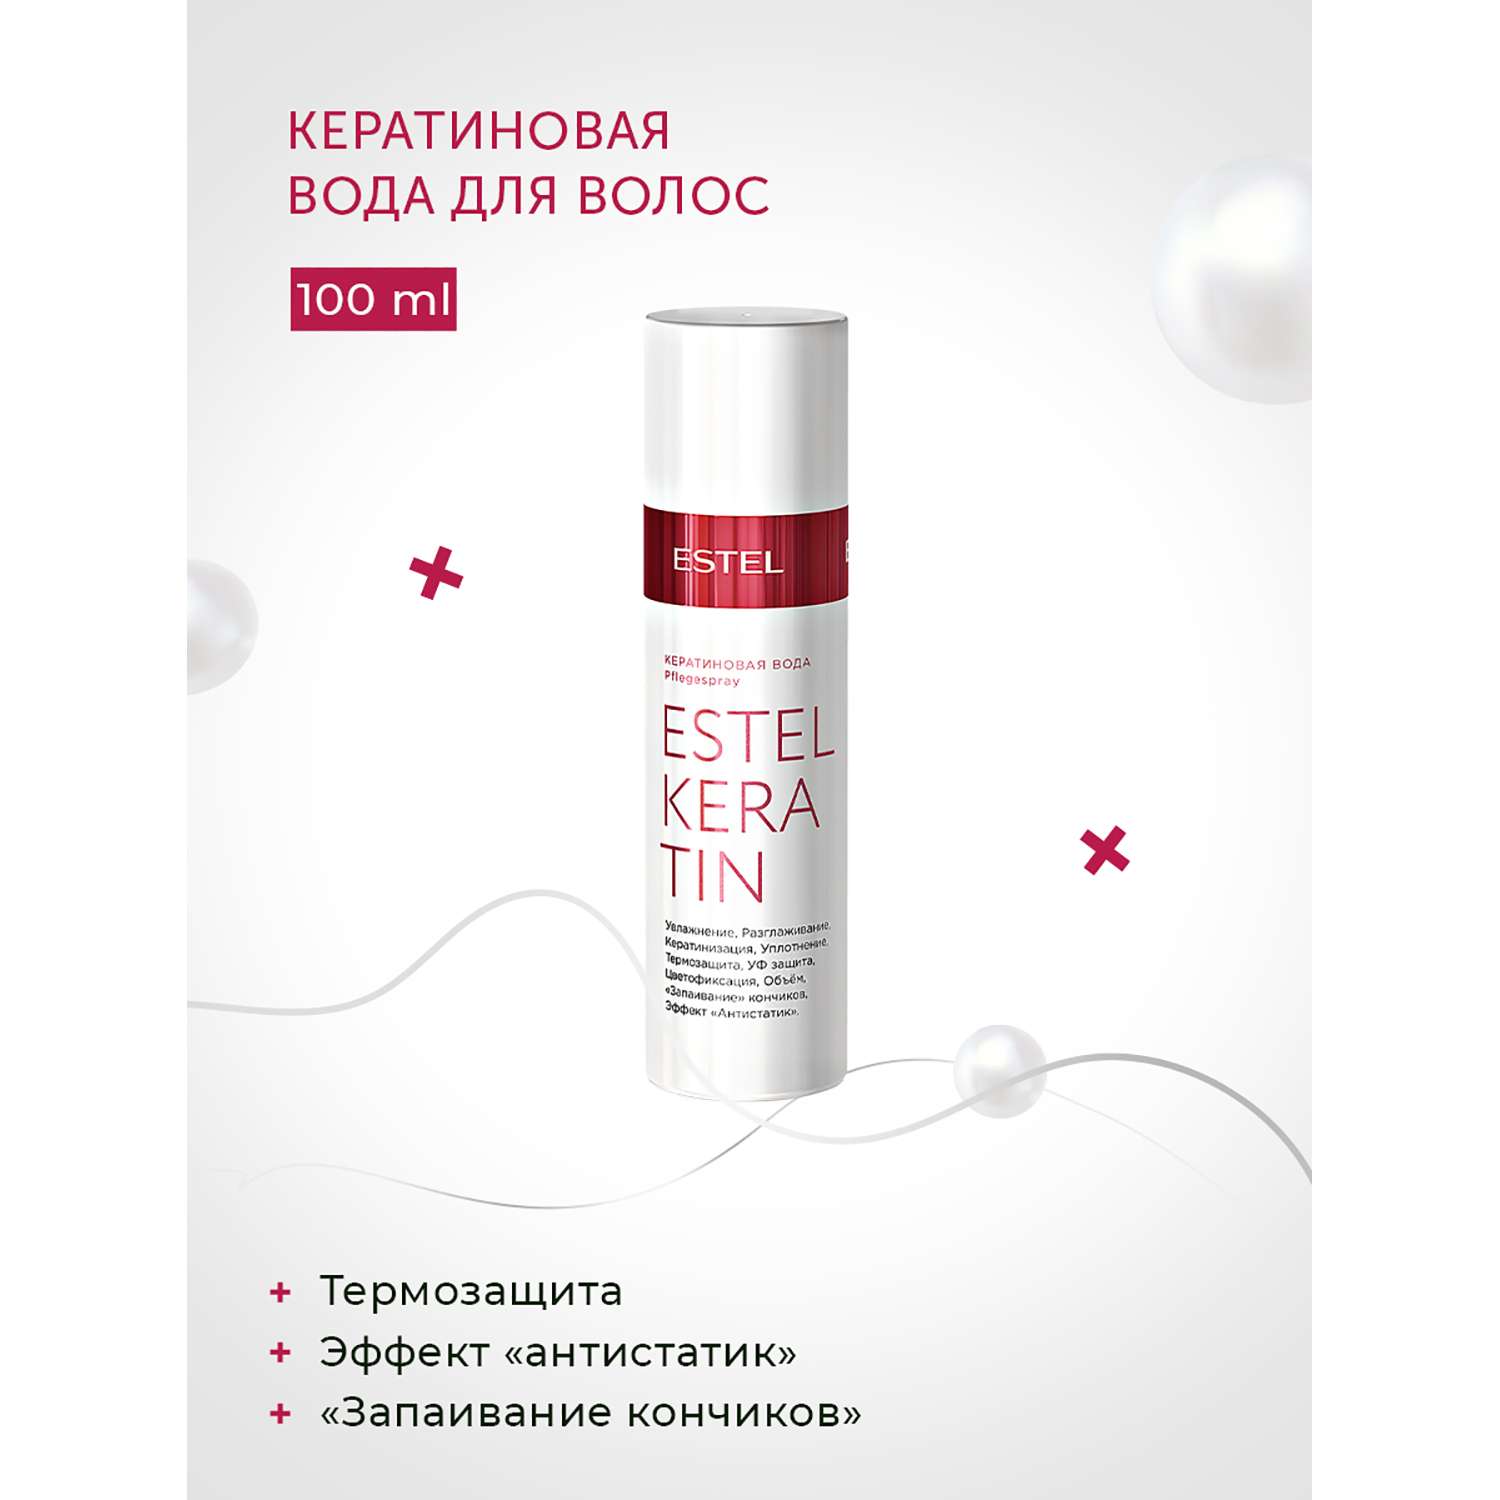 Кератиновая вода Estel Professional KERATIN для волос 100 мл - фото 2